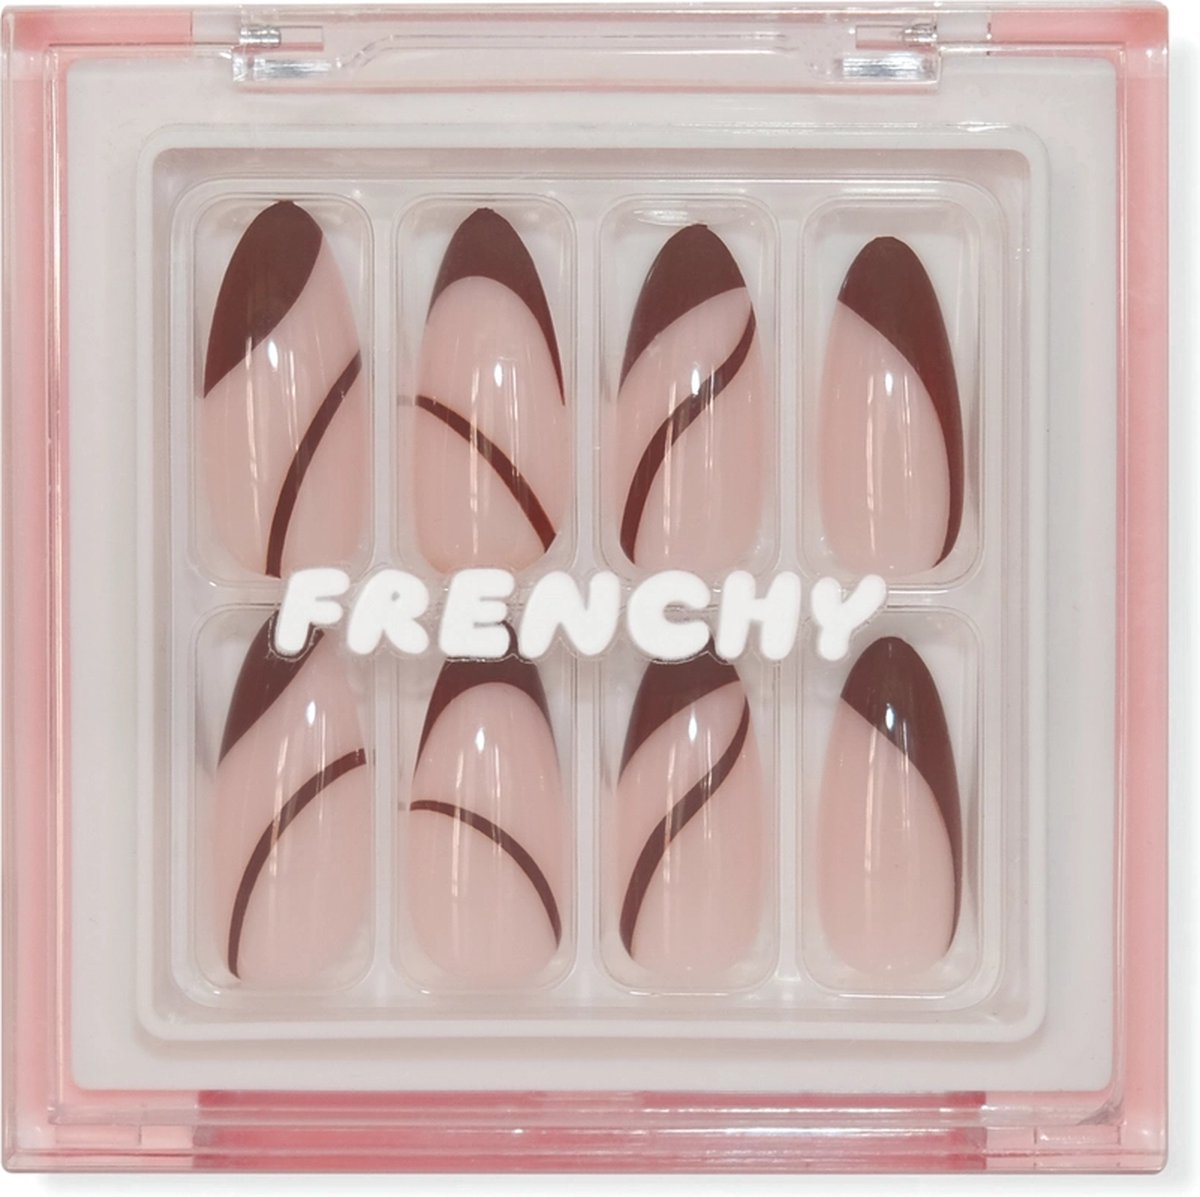 Frenchy Cosmetics 'Dolce Vita' - Nepnagel kit met lijm en nagelstickers - Kunstnagels - Plaknagels